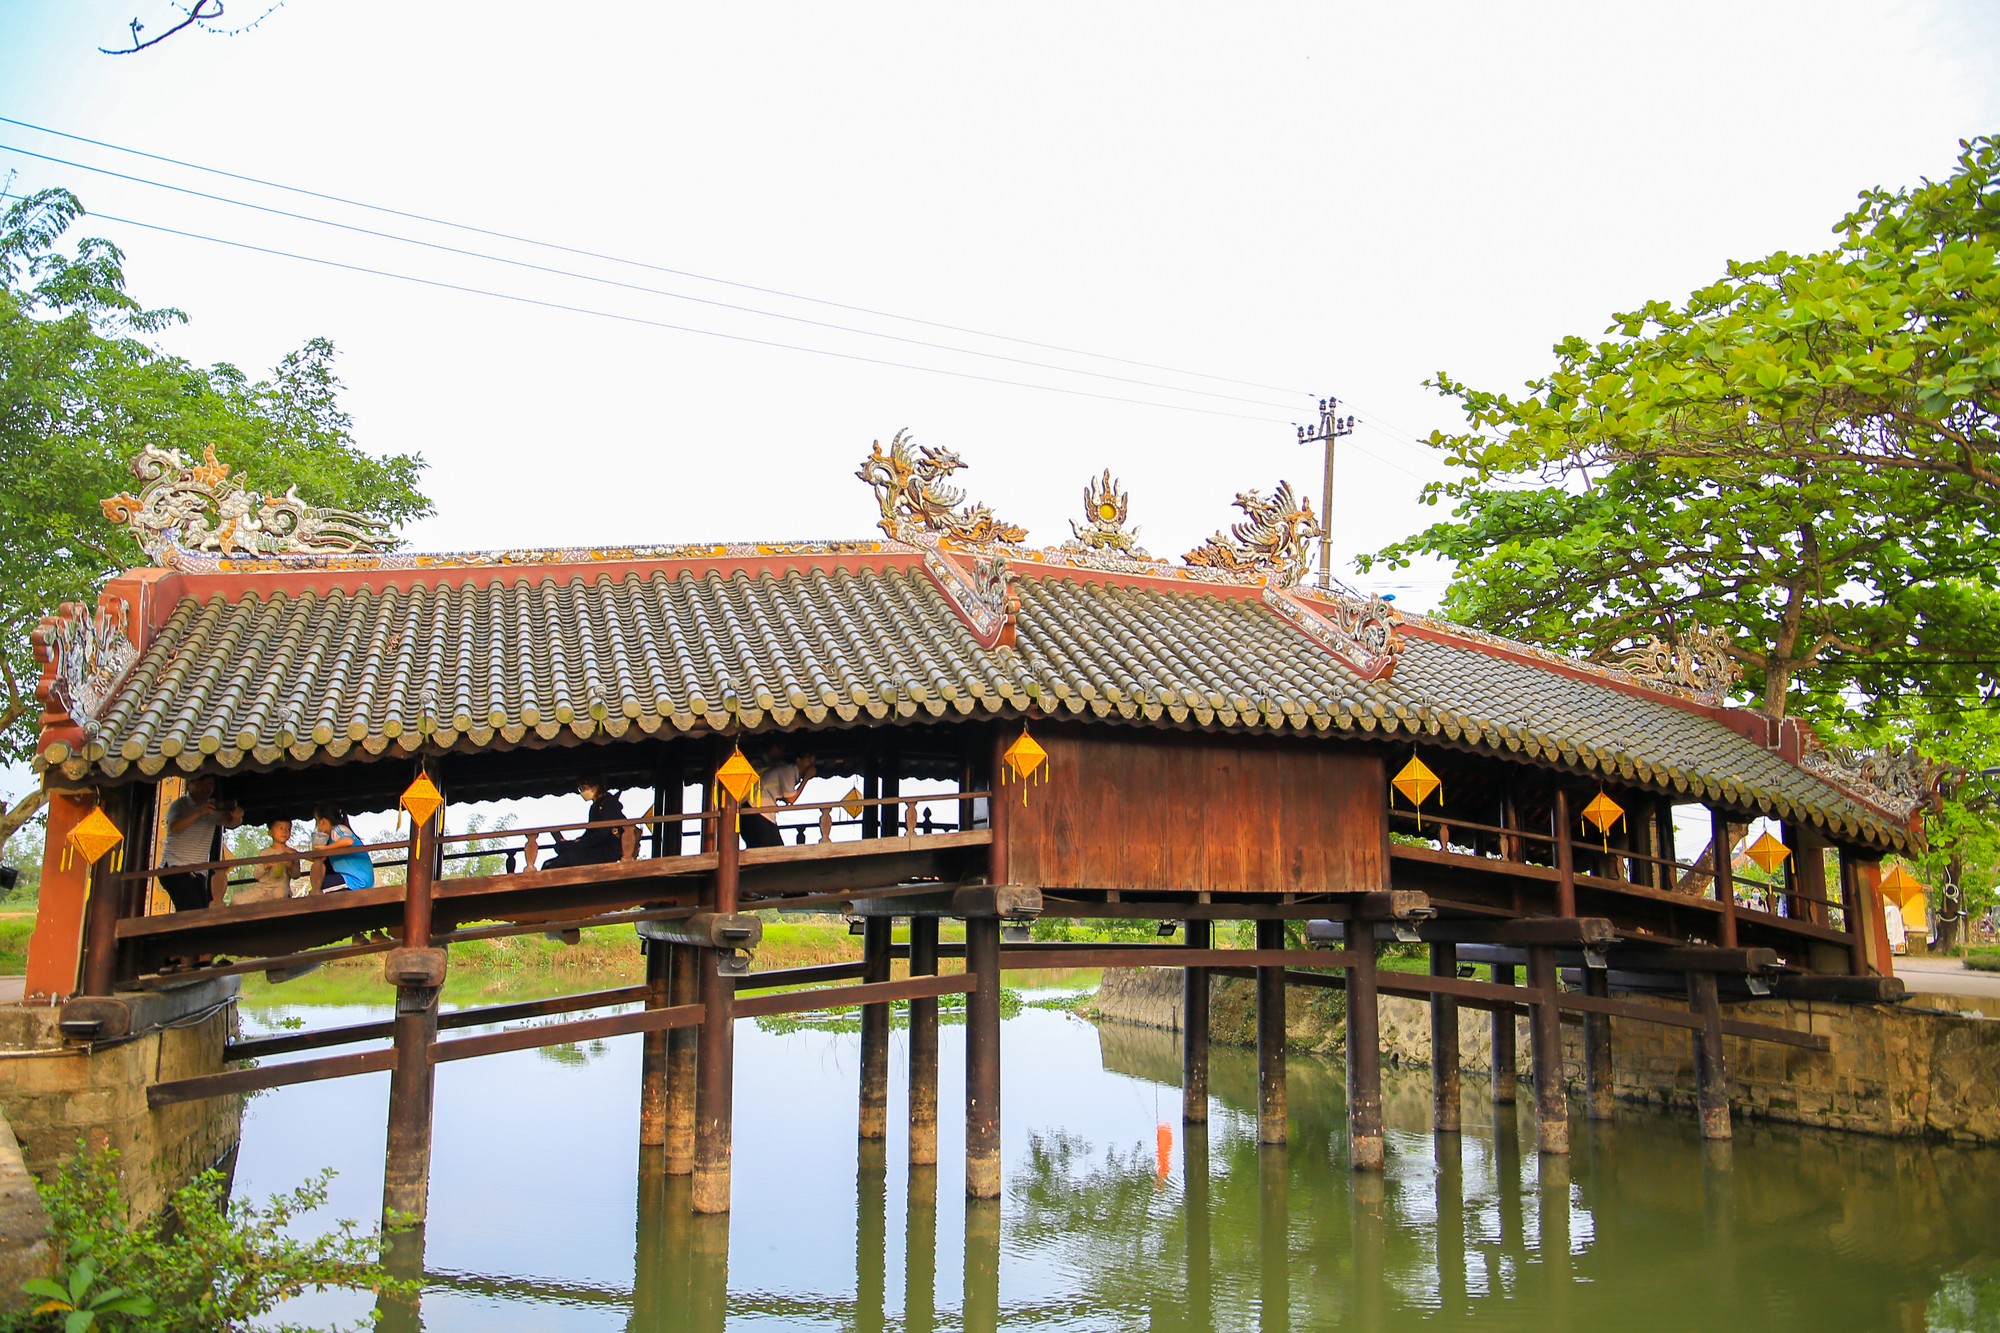 Cầu được thiết kế theo kiểu “thượng gia, hạ kiều”, có thể hiểu là trên nhà dưới cầu, nghĩa là cây cầu được bao bọc bằng mái che thiết kế như một ngôi nhà.